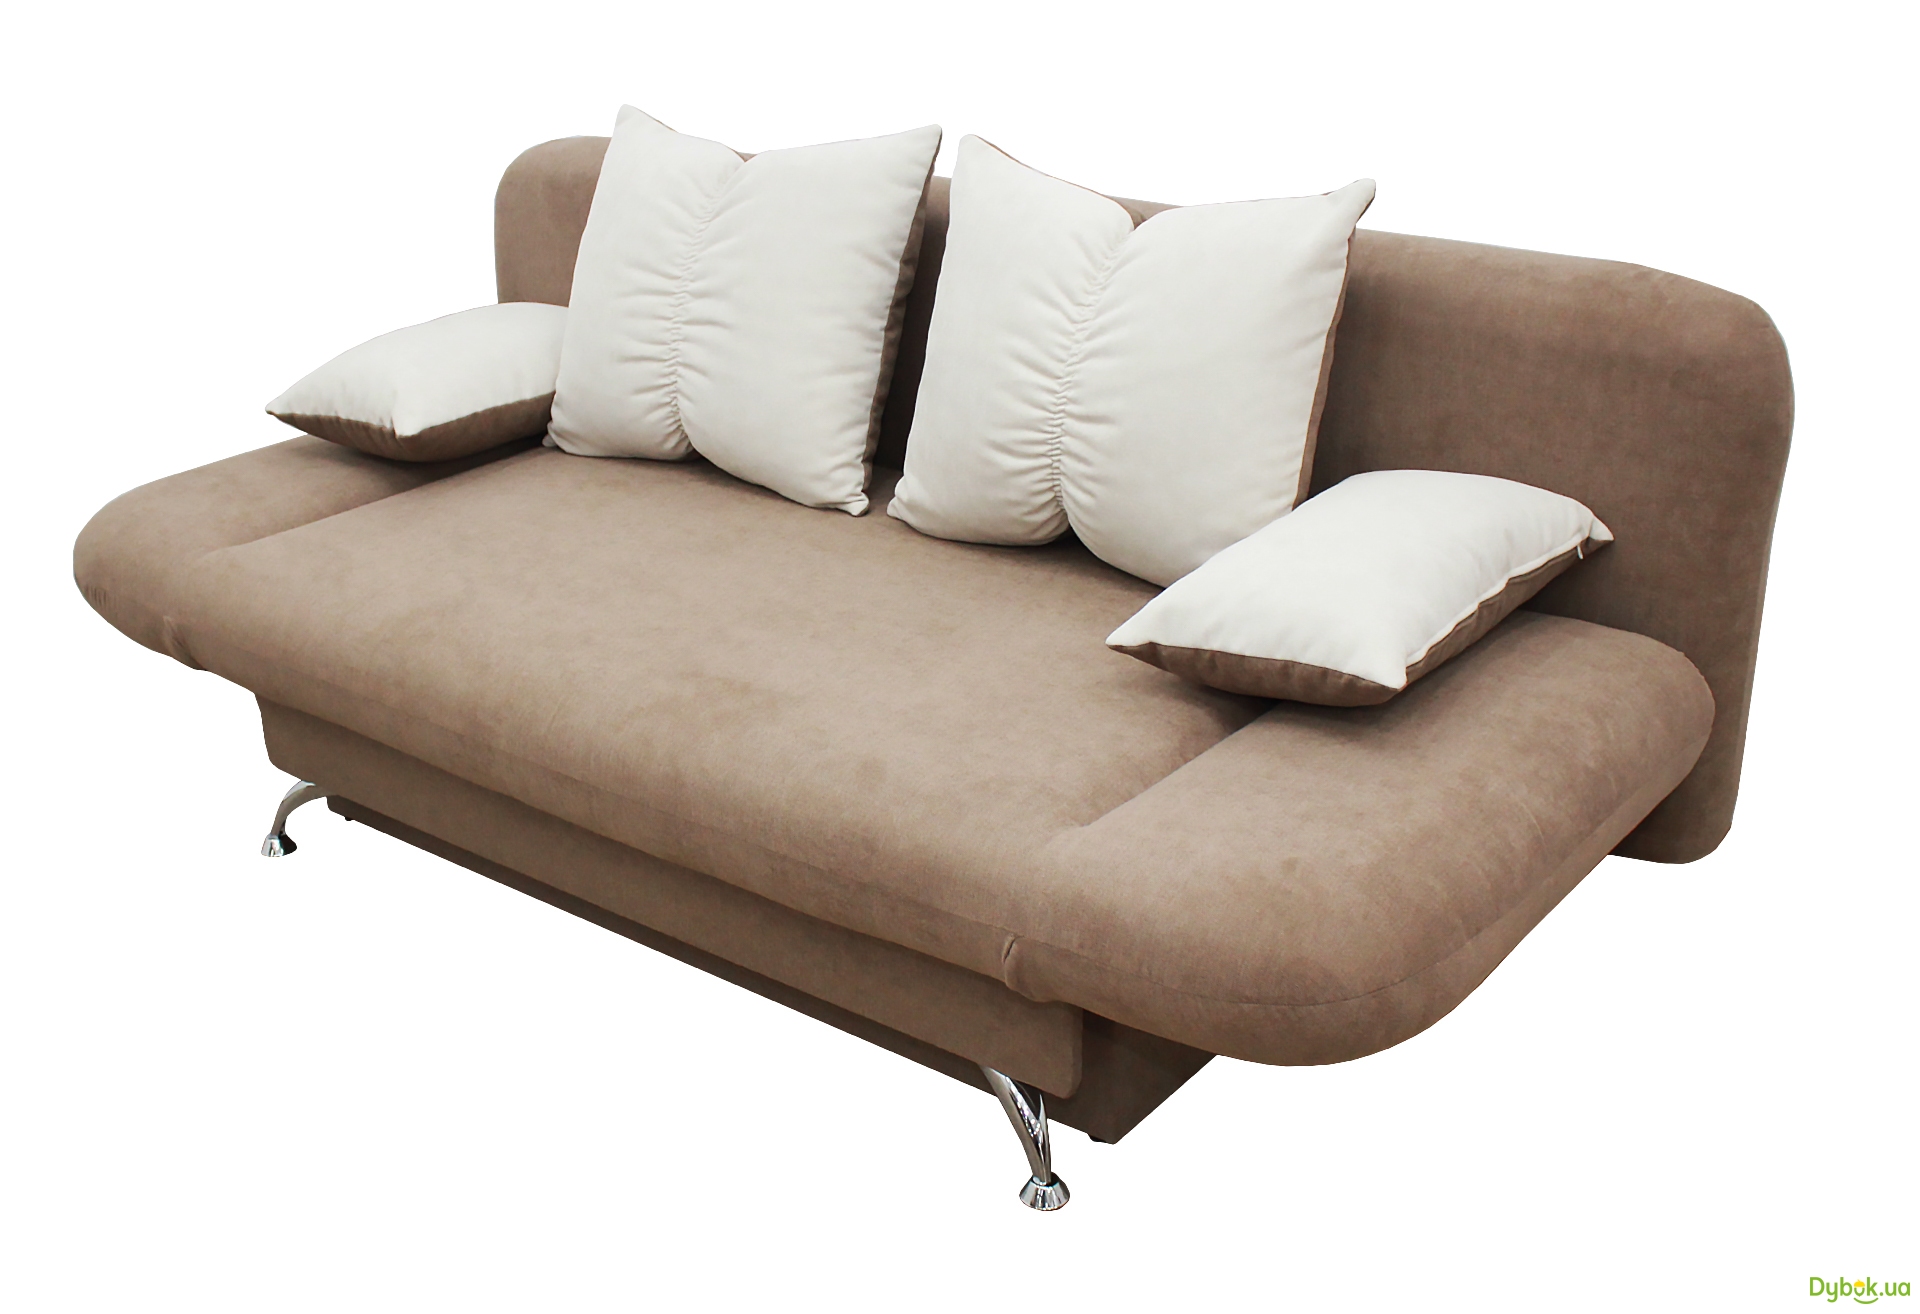 ➤ Как правильно выбрать диван для маленькой комнаты — Полезные статьи омебели от мебельного магазина ДУБОК